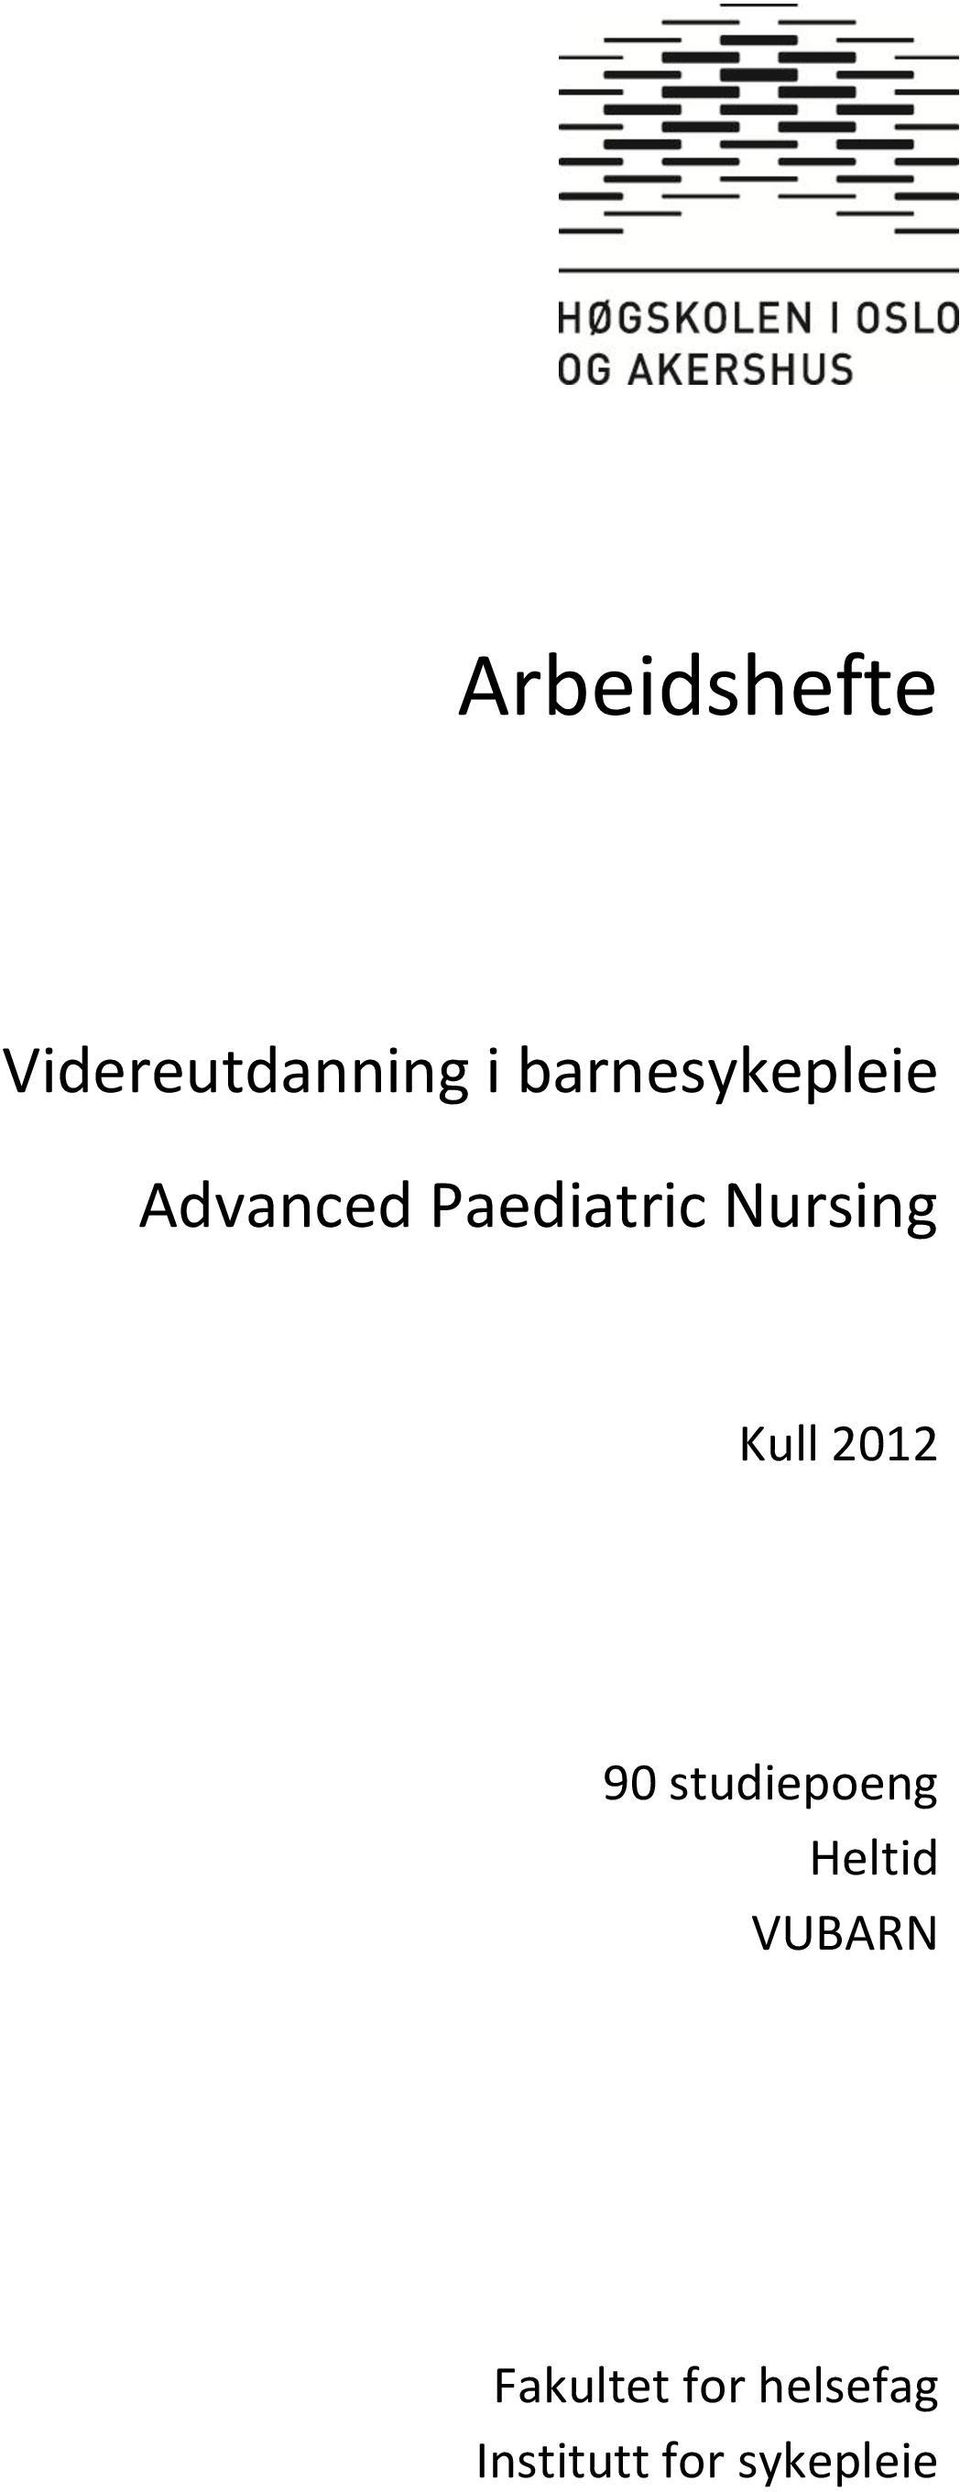 Nursing Kull 2012 90 studiepoeng Heltid